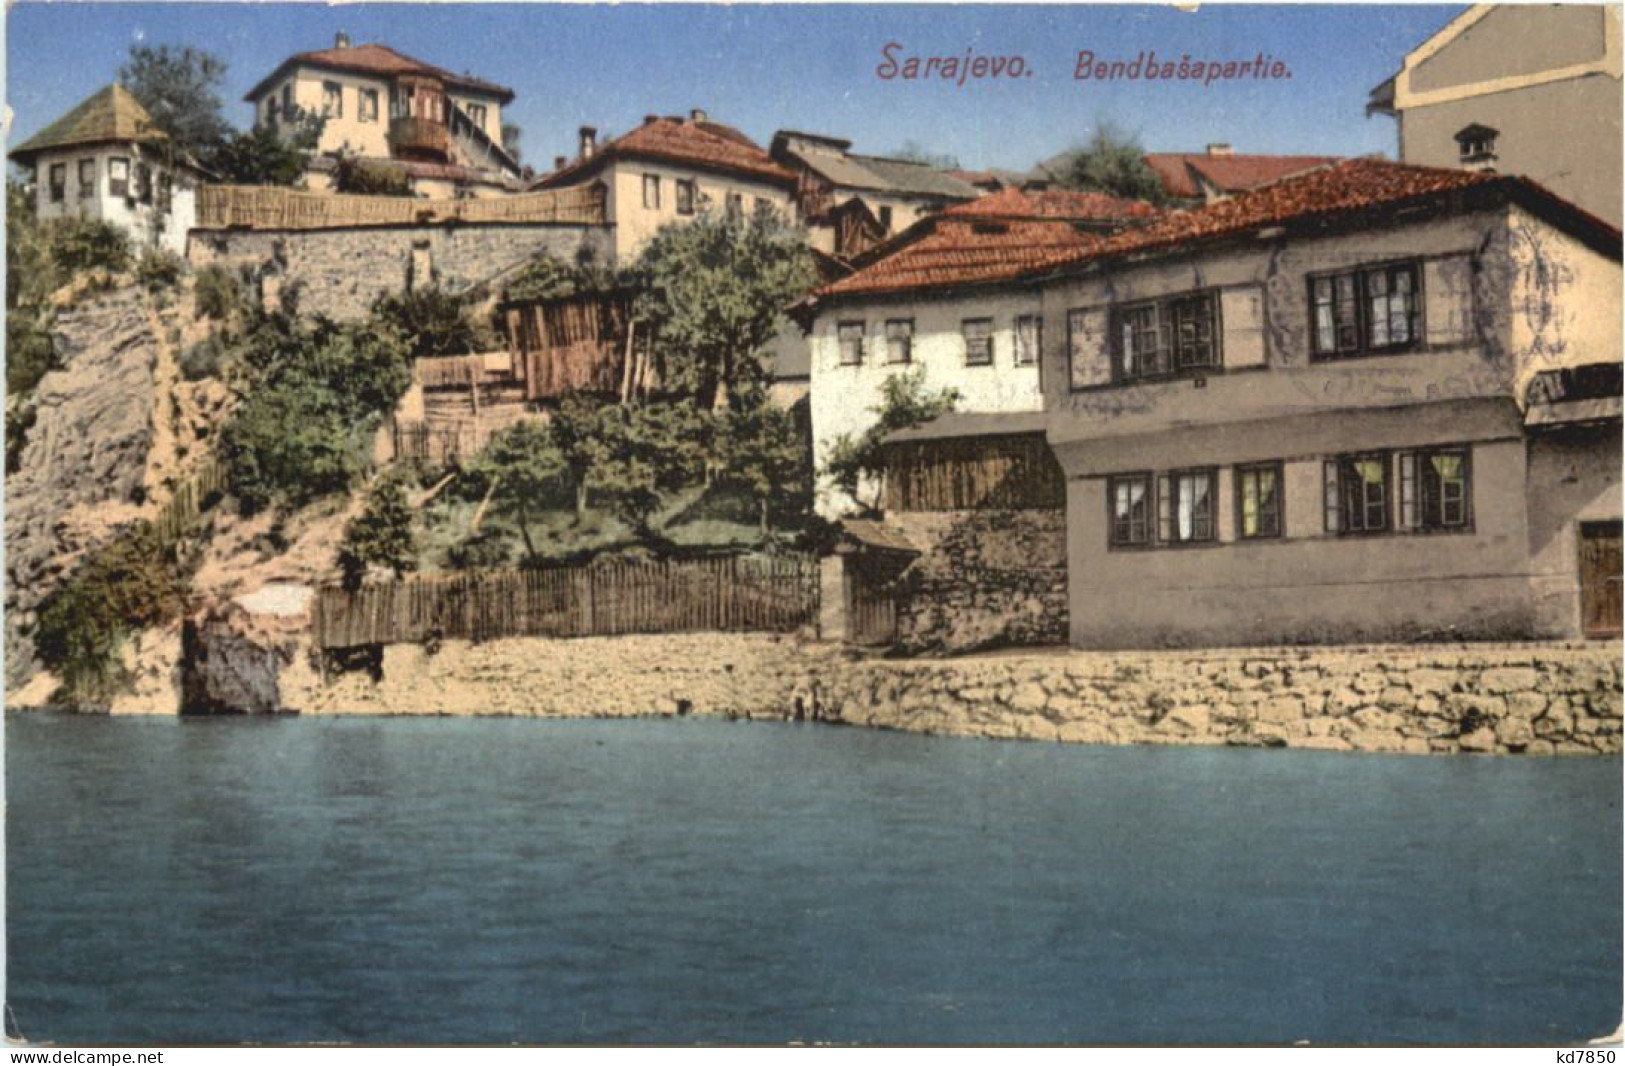 Sarajevo - Bendbasapartie - Bosnia And Herzegovina